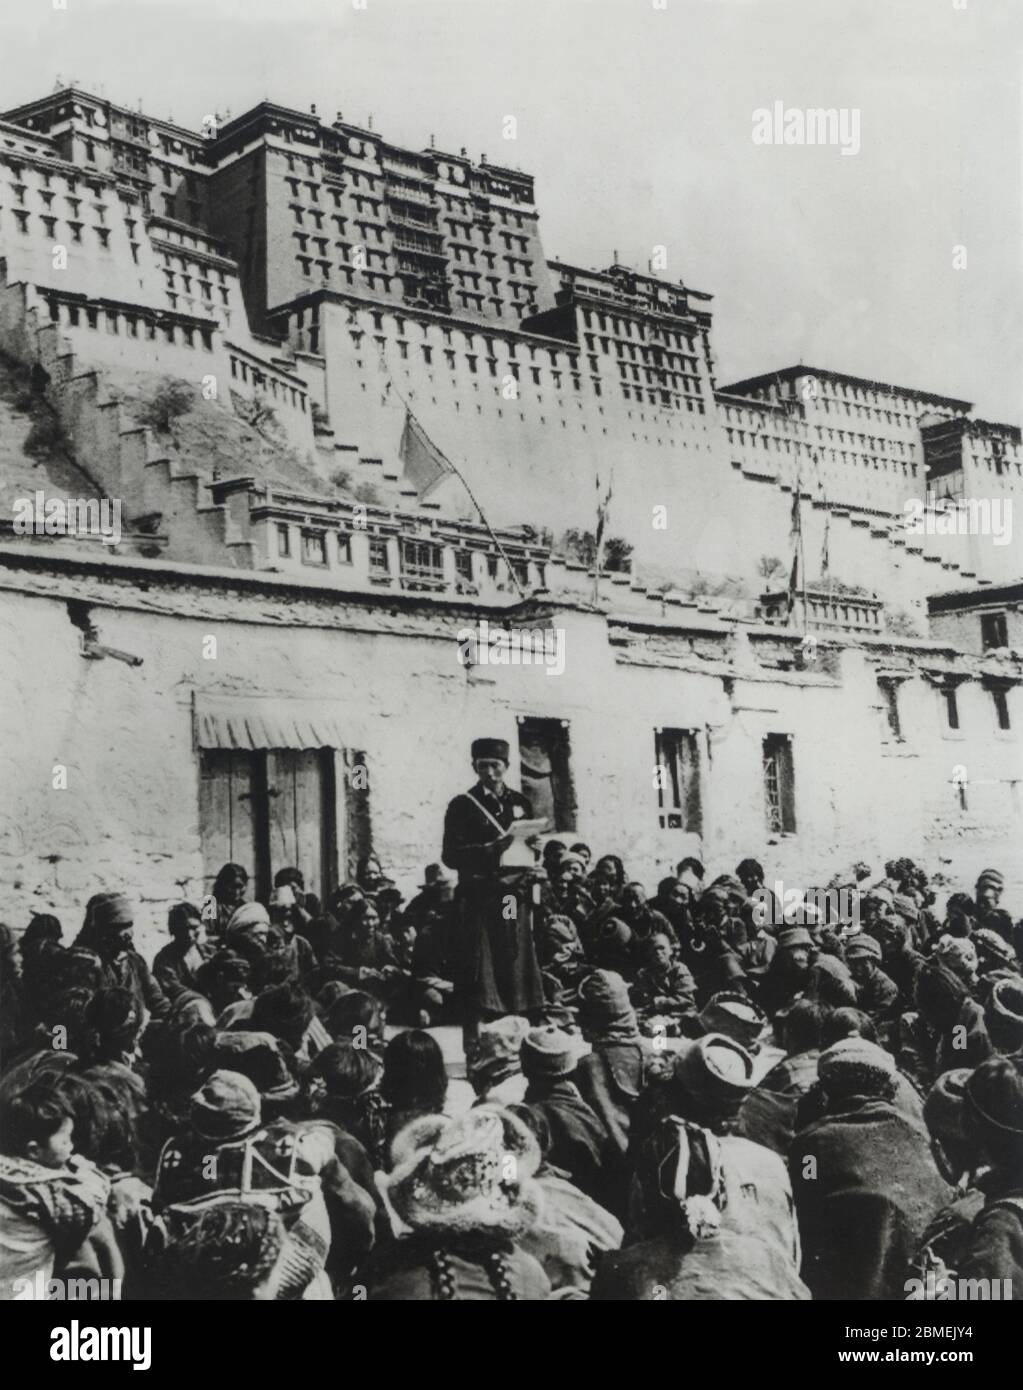 Tibet. Palacio de Lhasa. Un lider del partido comunista chino dirigiéndpse a los tibetanos para solicitar su apoyo al Panchen Lama. Abril de 1959. Foto Keystone. Stock Photo